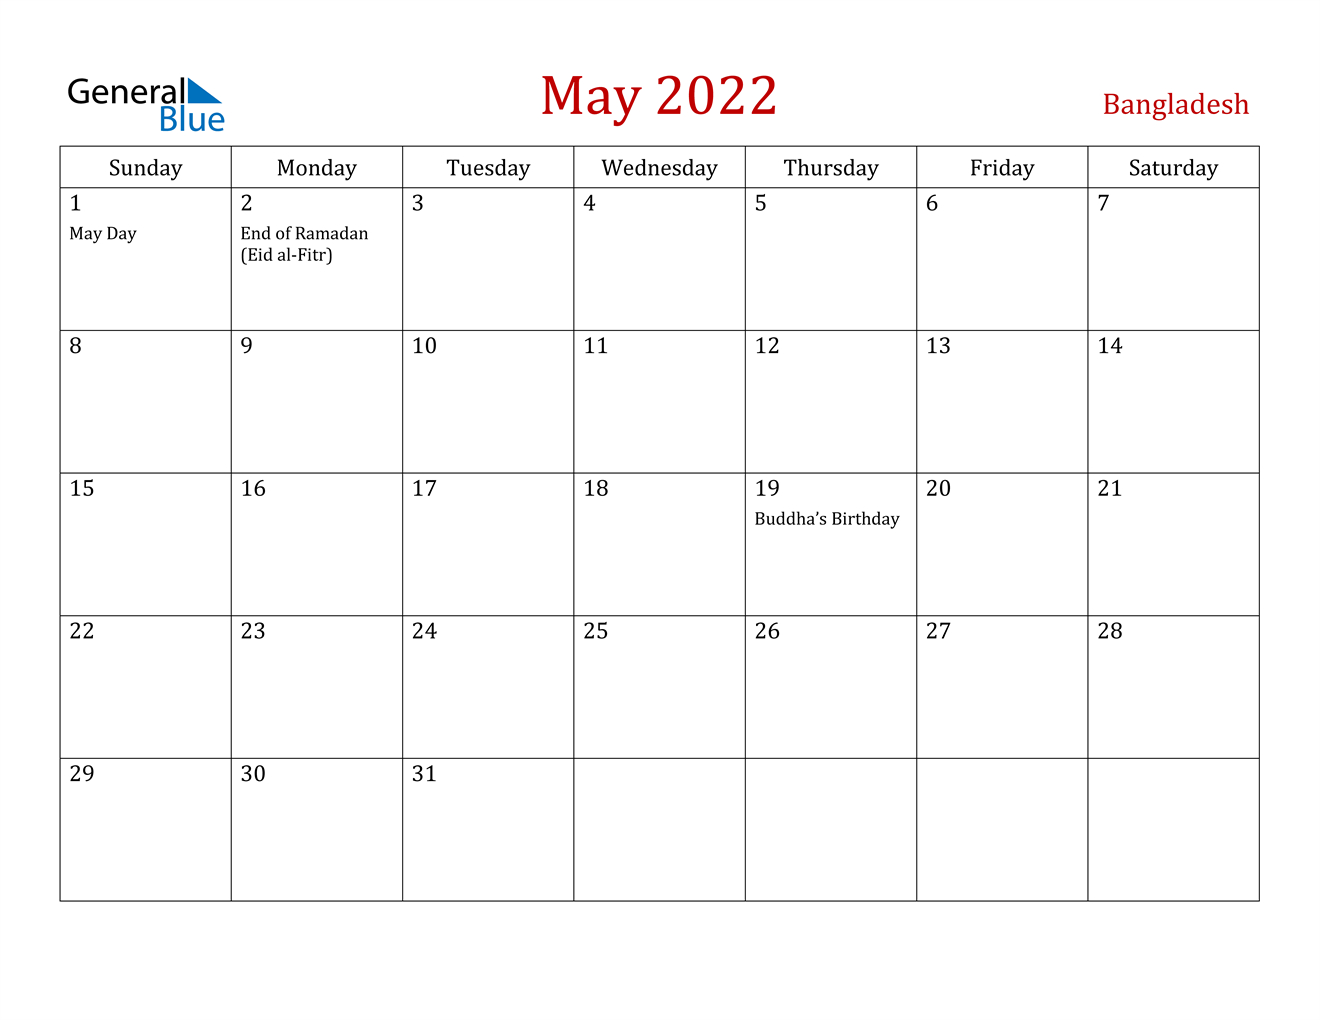 May 2022 Calendar - Bangladesh